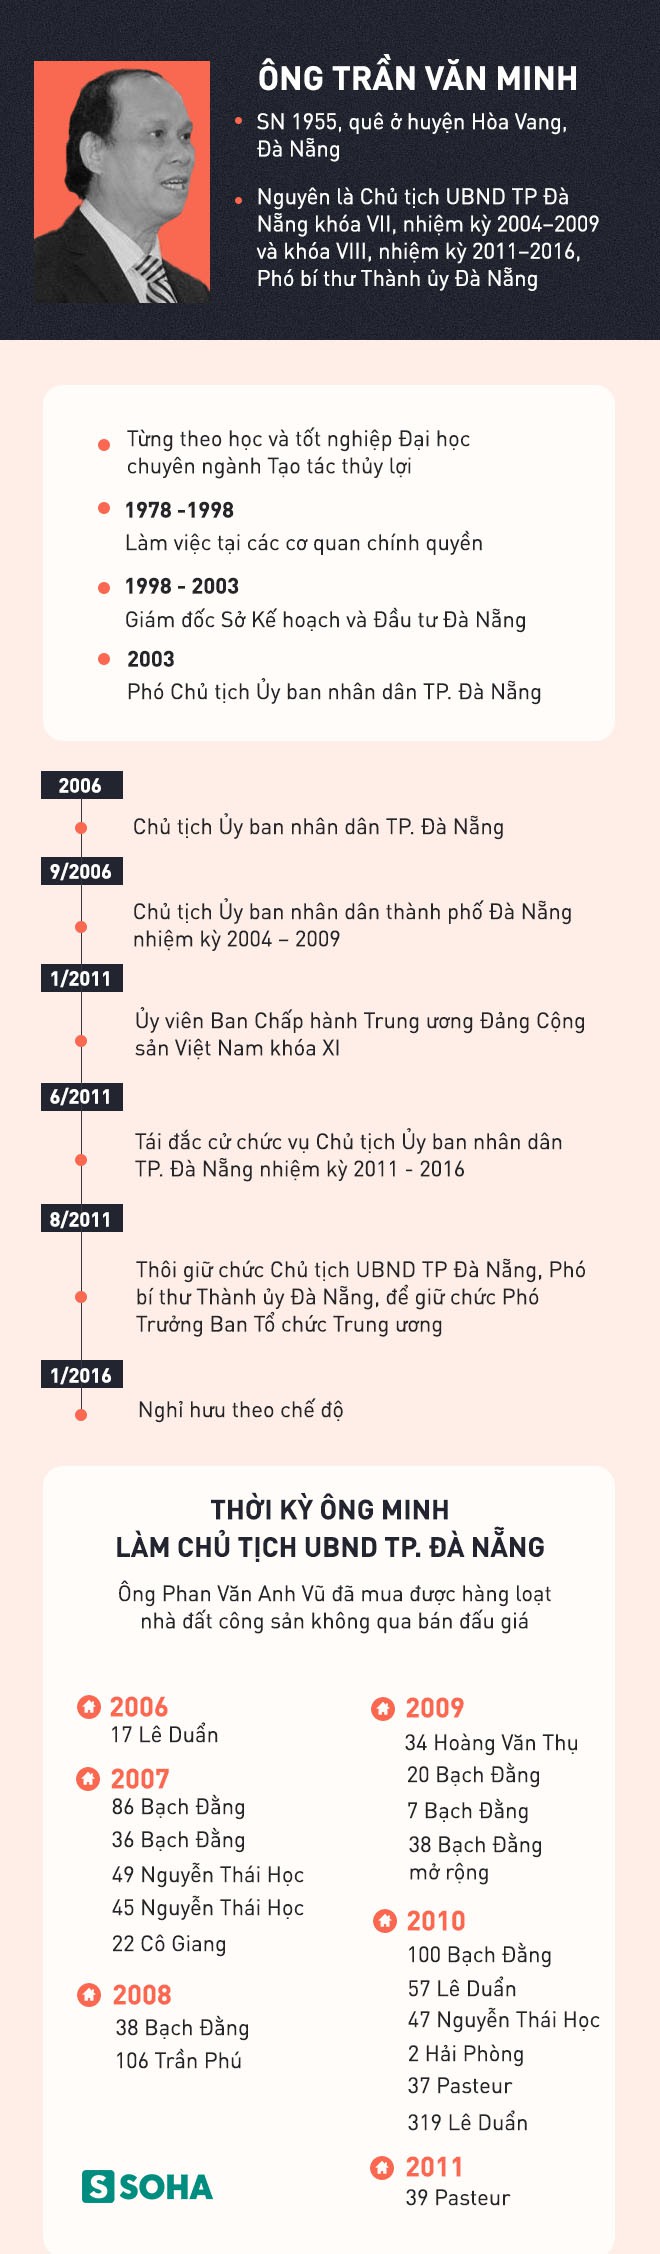 Quan lộ của cựu Chủ tịch Đà Nẵng Trần Văn Minh và mối liên hệ với Vũ Nhôm - Ảnh 2.